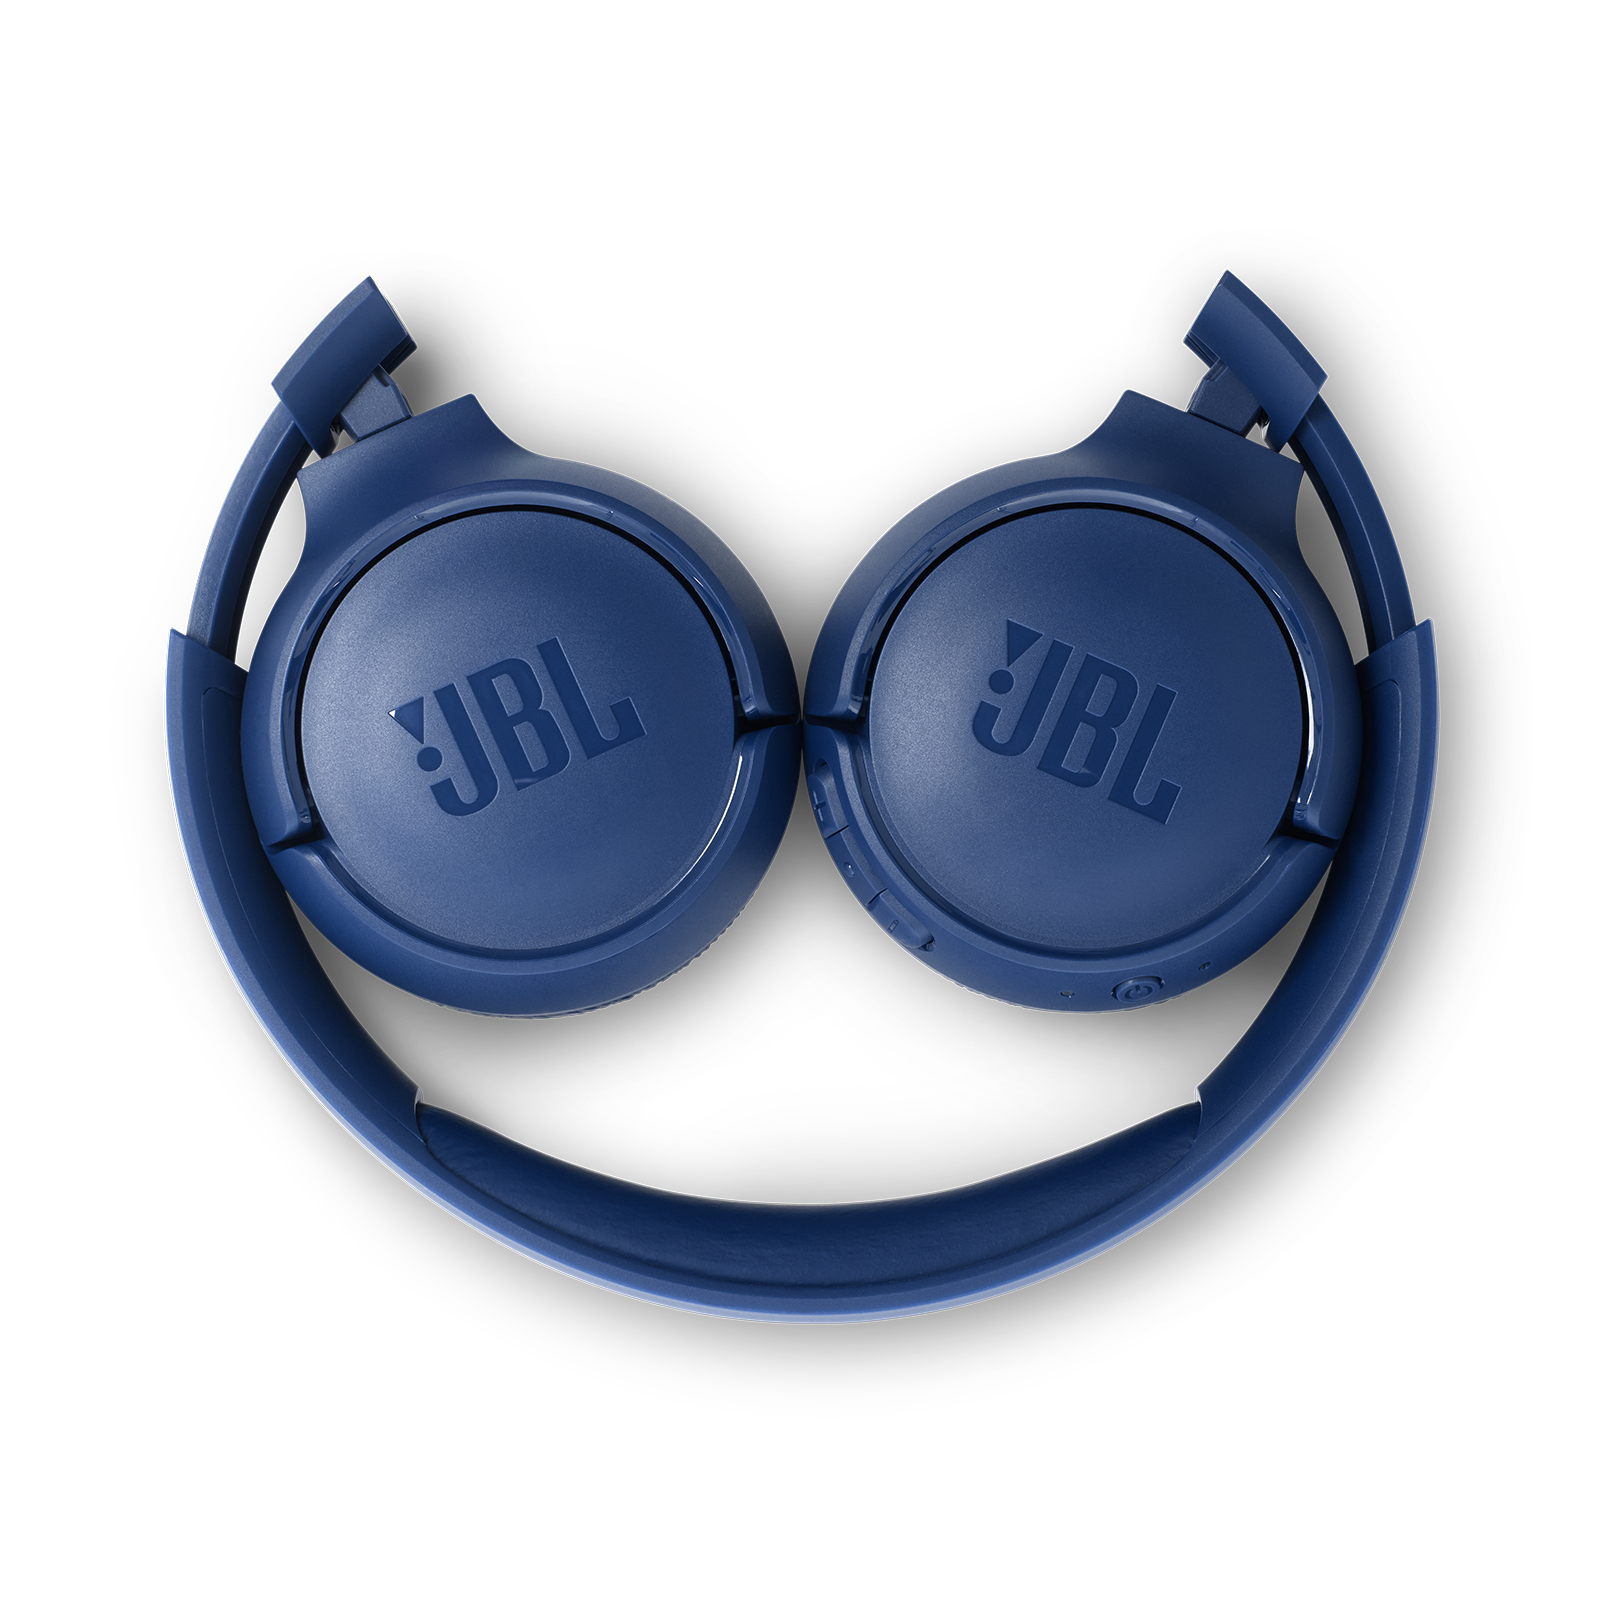 JBL Tune 500BT - Blue - Wireless on-ear headphones - Detailshot 2